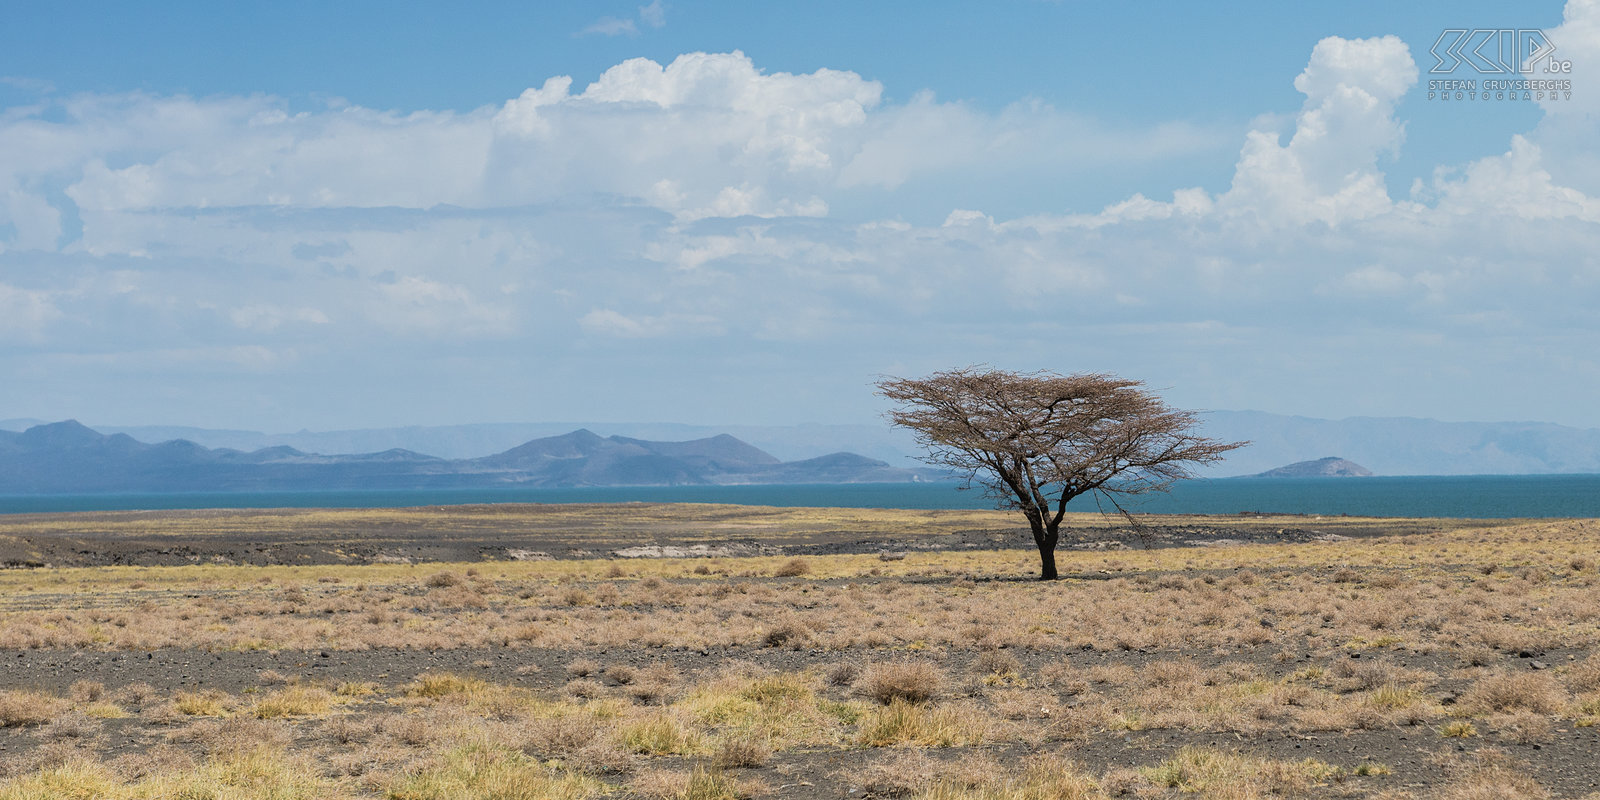 Lake Turkana Eenzame acacia boom op de hete vlaktes aan het Turkanameer. Stefan Cruysberghs